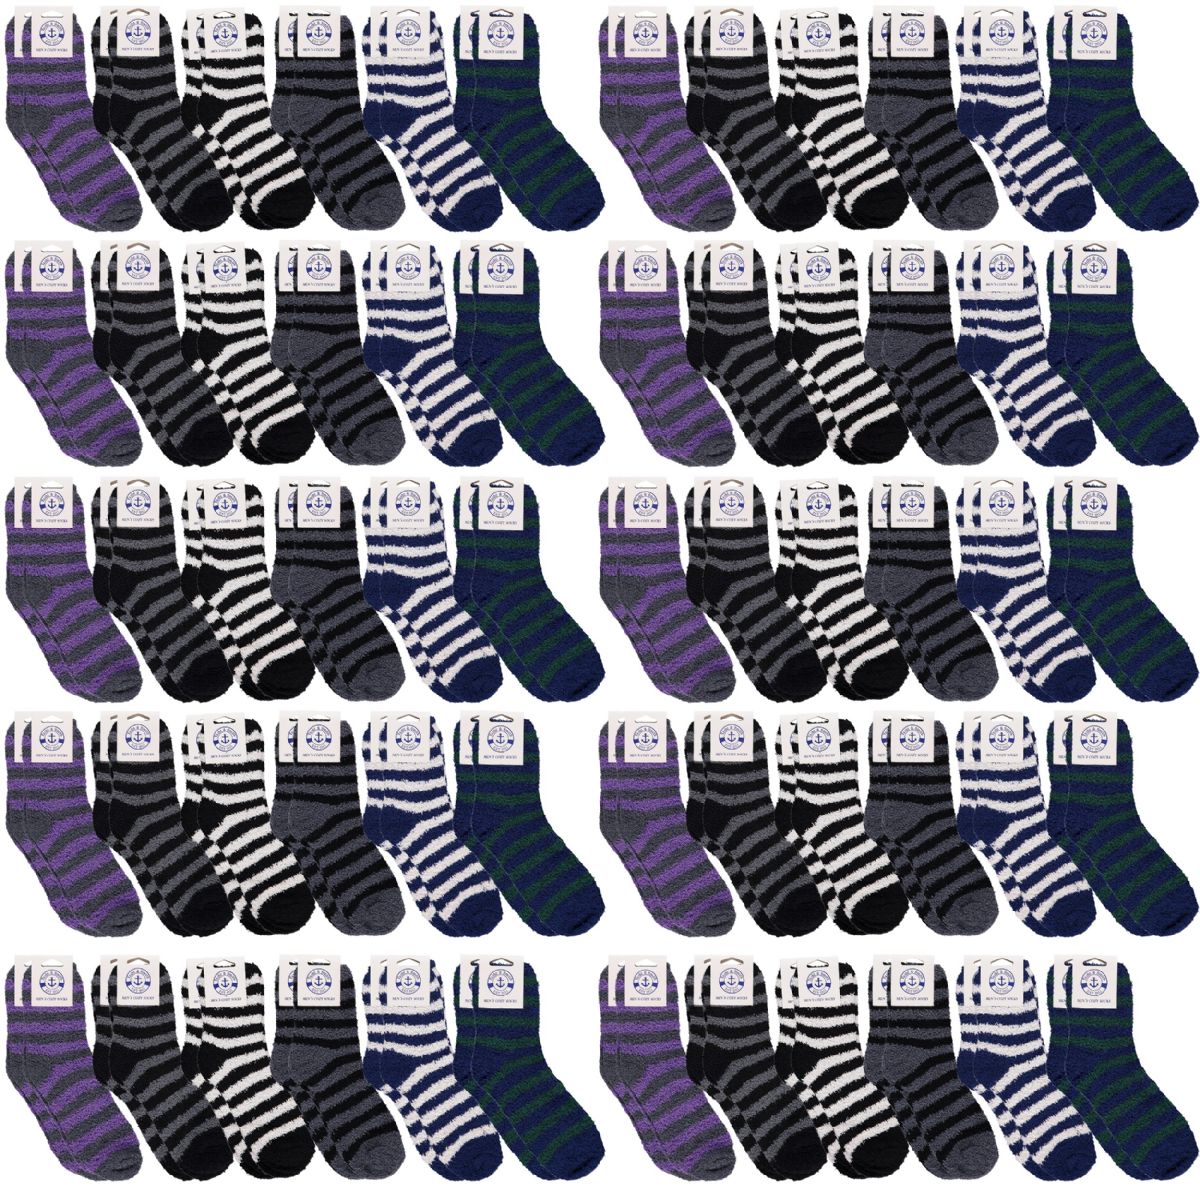 120 Bulk Yacht & Smith Men's Assorted Colored Warm & Cozy Fuzzy Socks